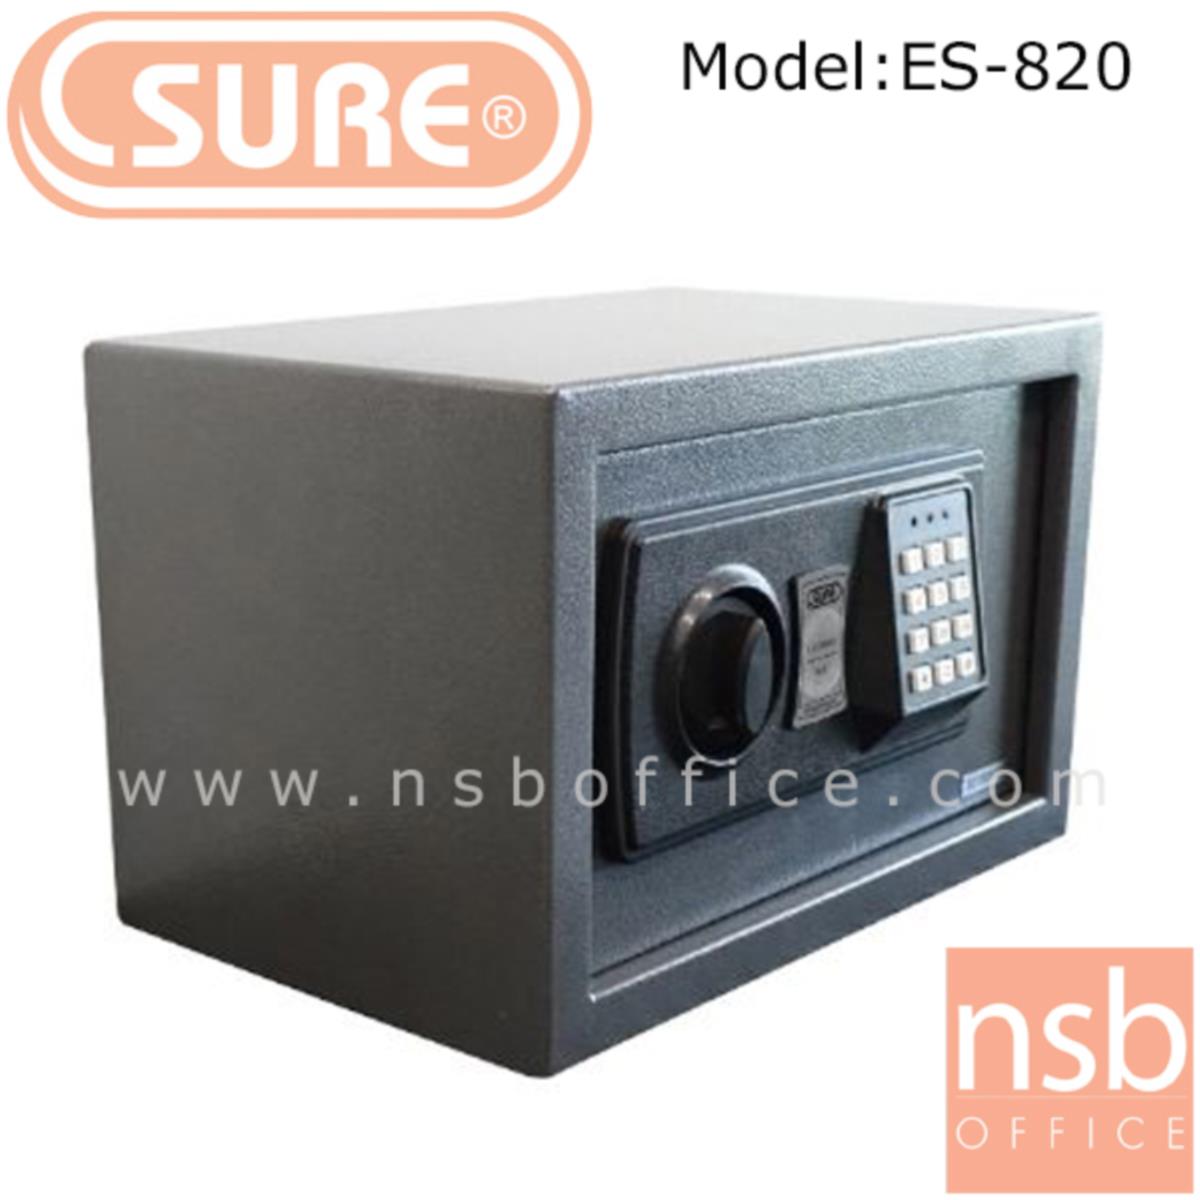 ตู้เซฟดิจตอล SR-ES820 น้ำหนัก 4 กก. (1 รหัสกด / ปุ่มหมุนบิด)   